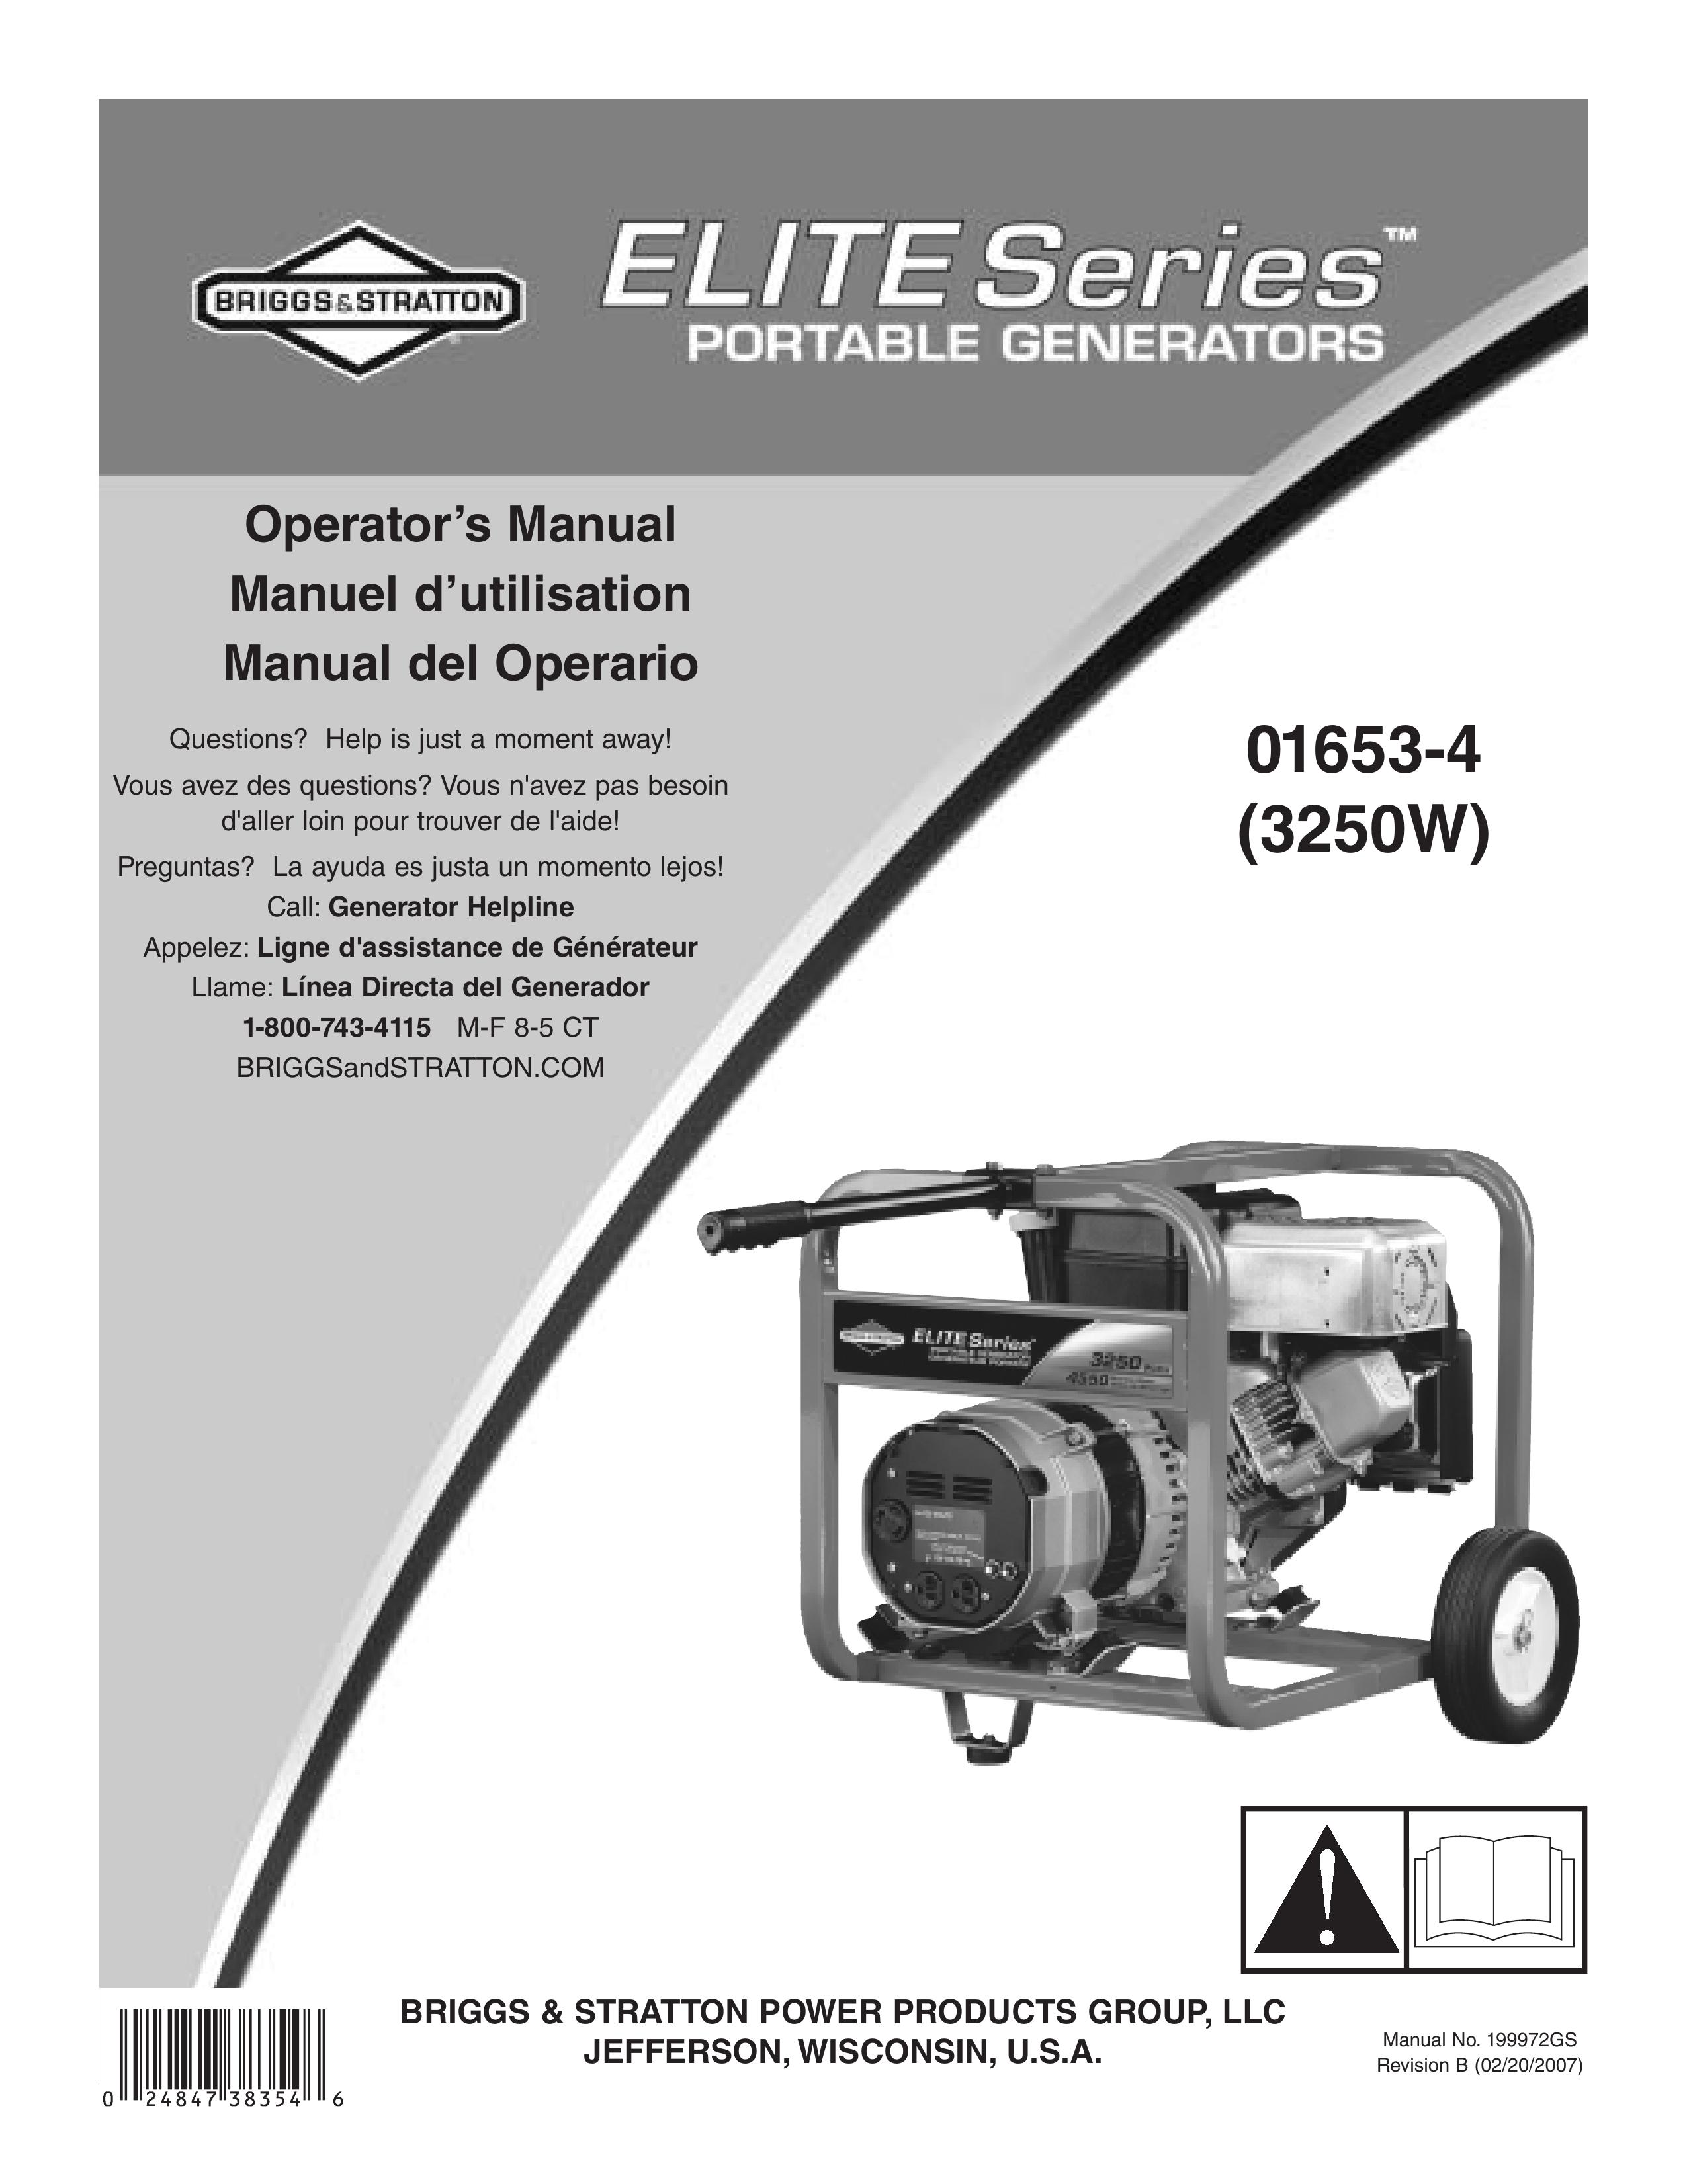 Briggs & Stratton 01653-4 Portable Generator User Manual